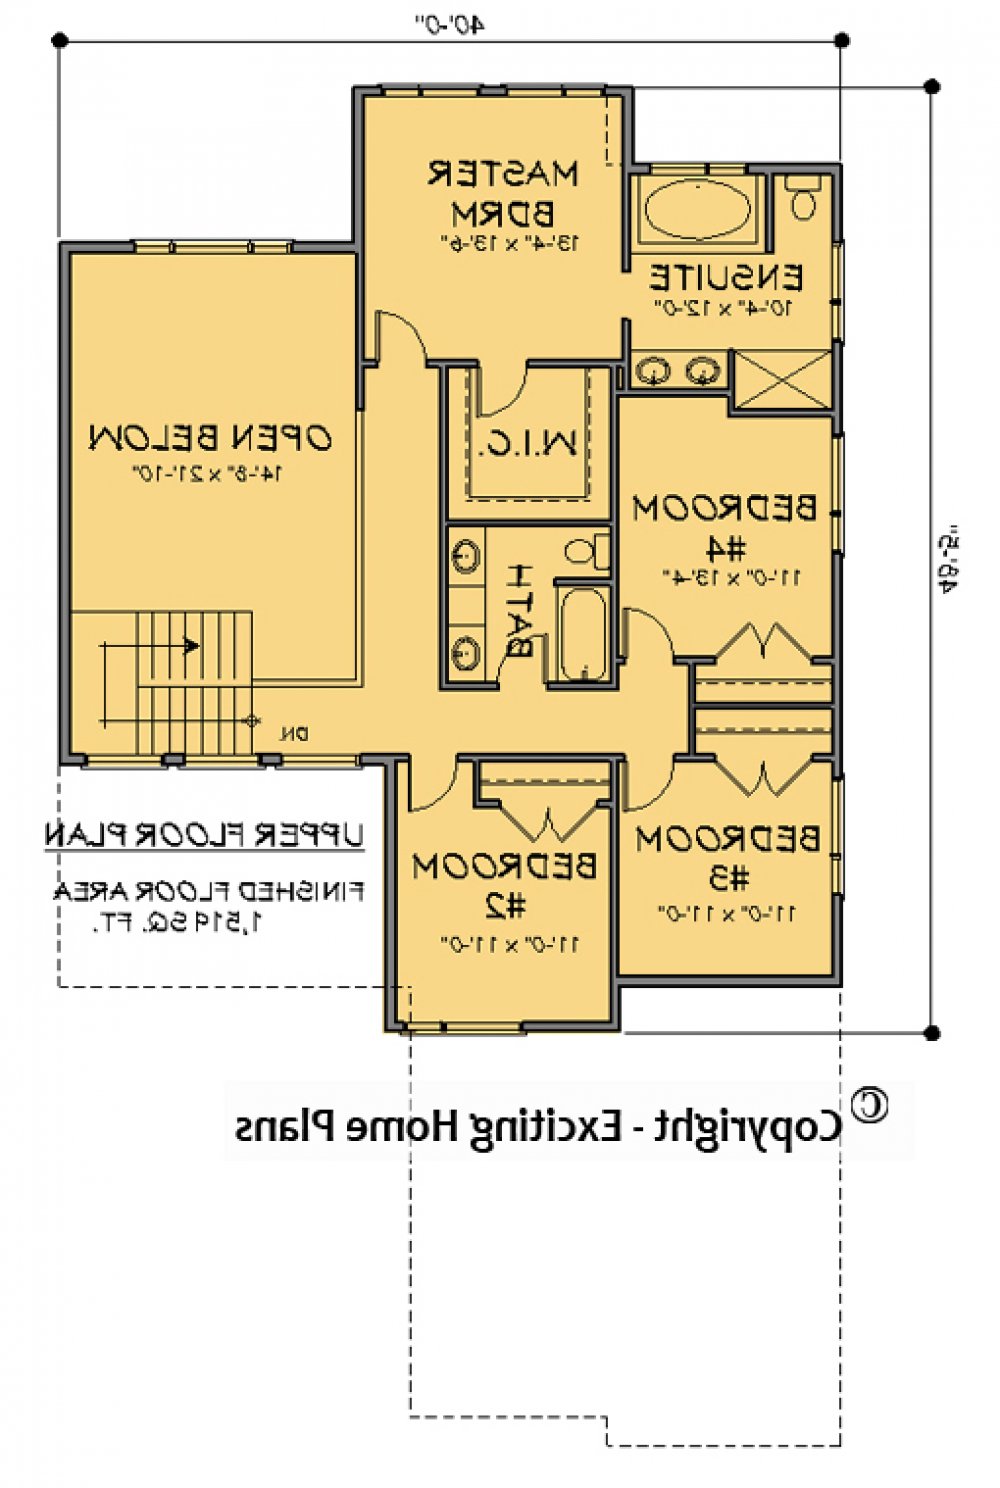 House Plan E1714-10  Upper Floor Plan REVERSE